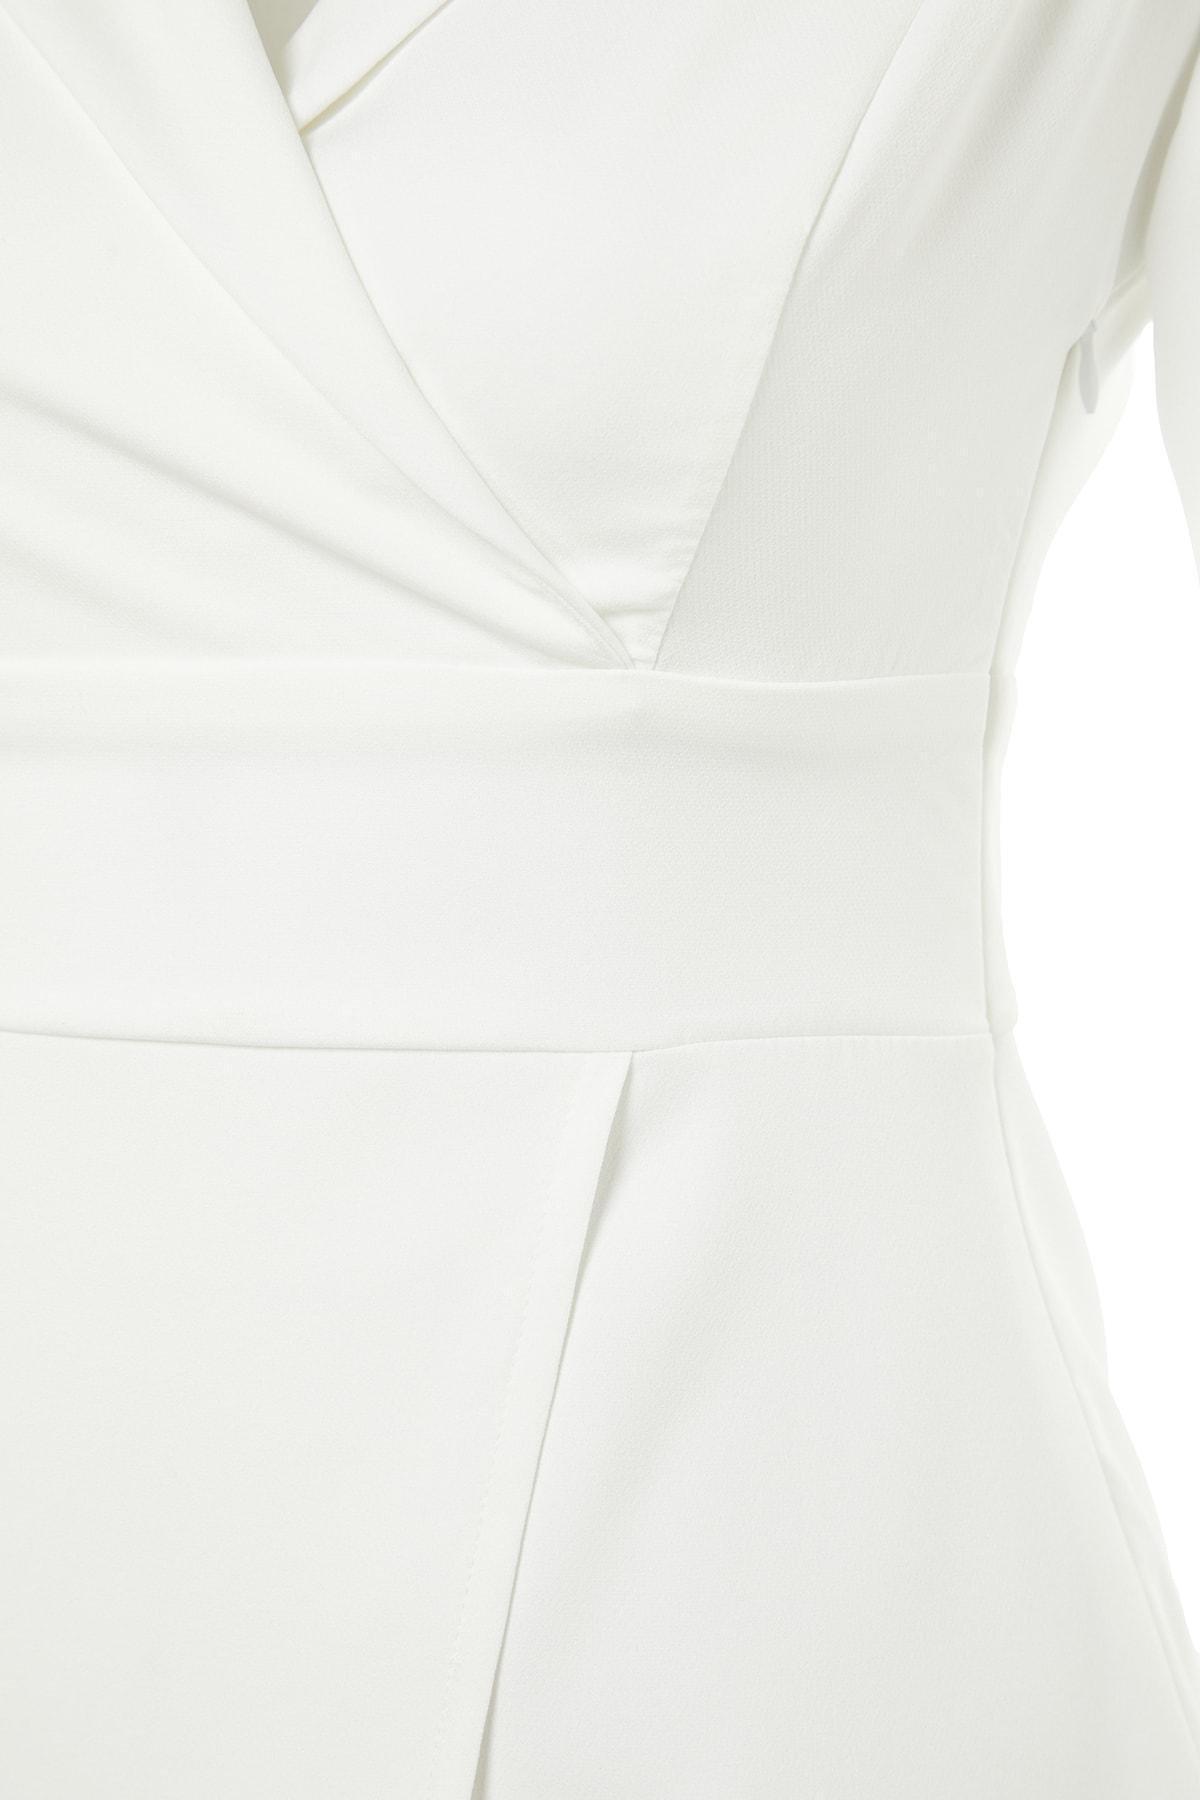 Trendyol - White Blazer Dress